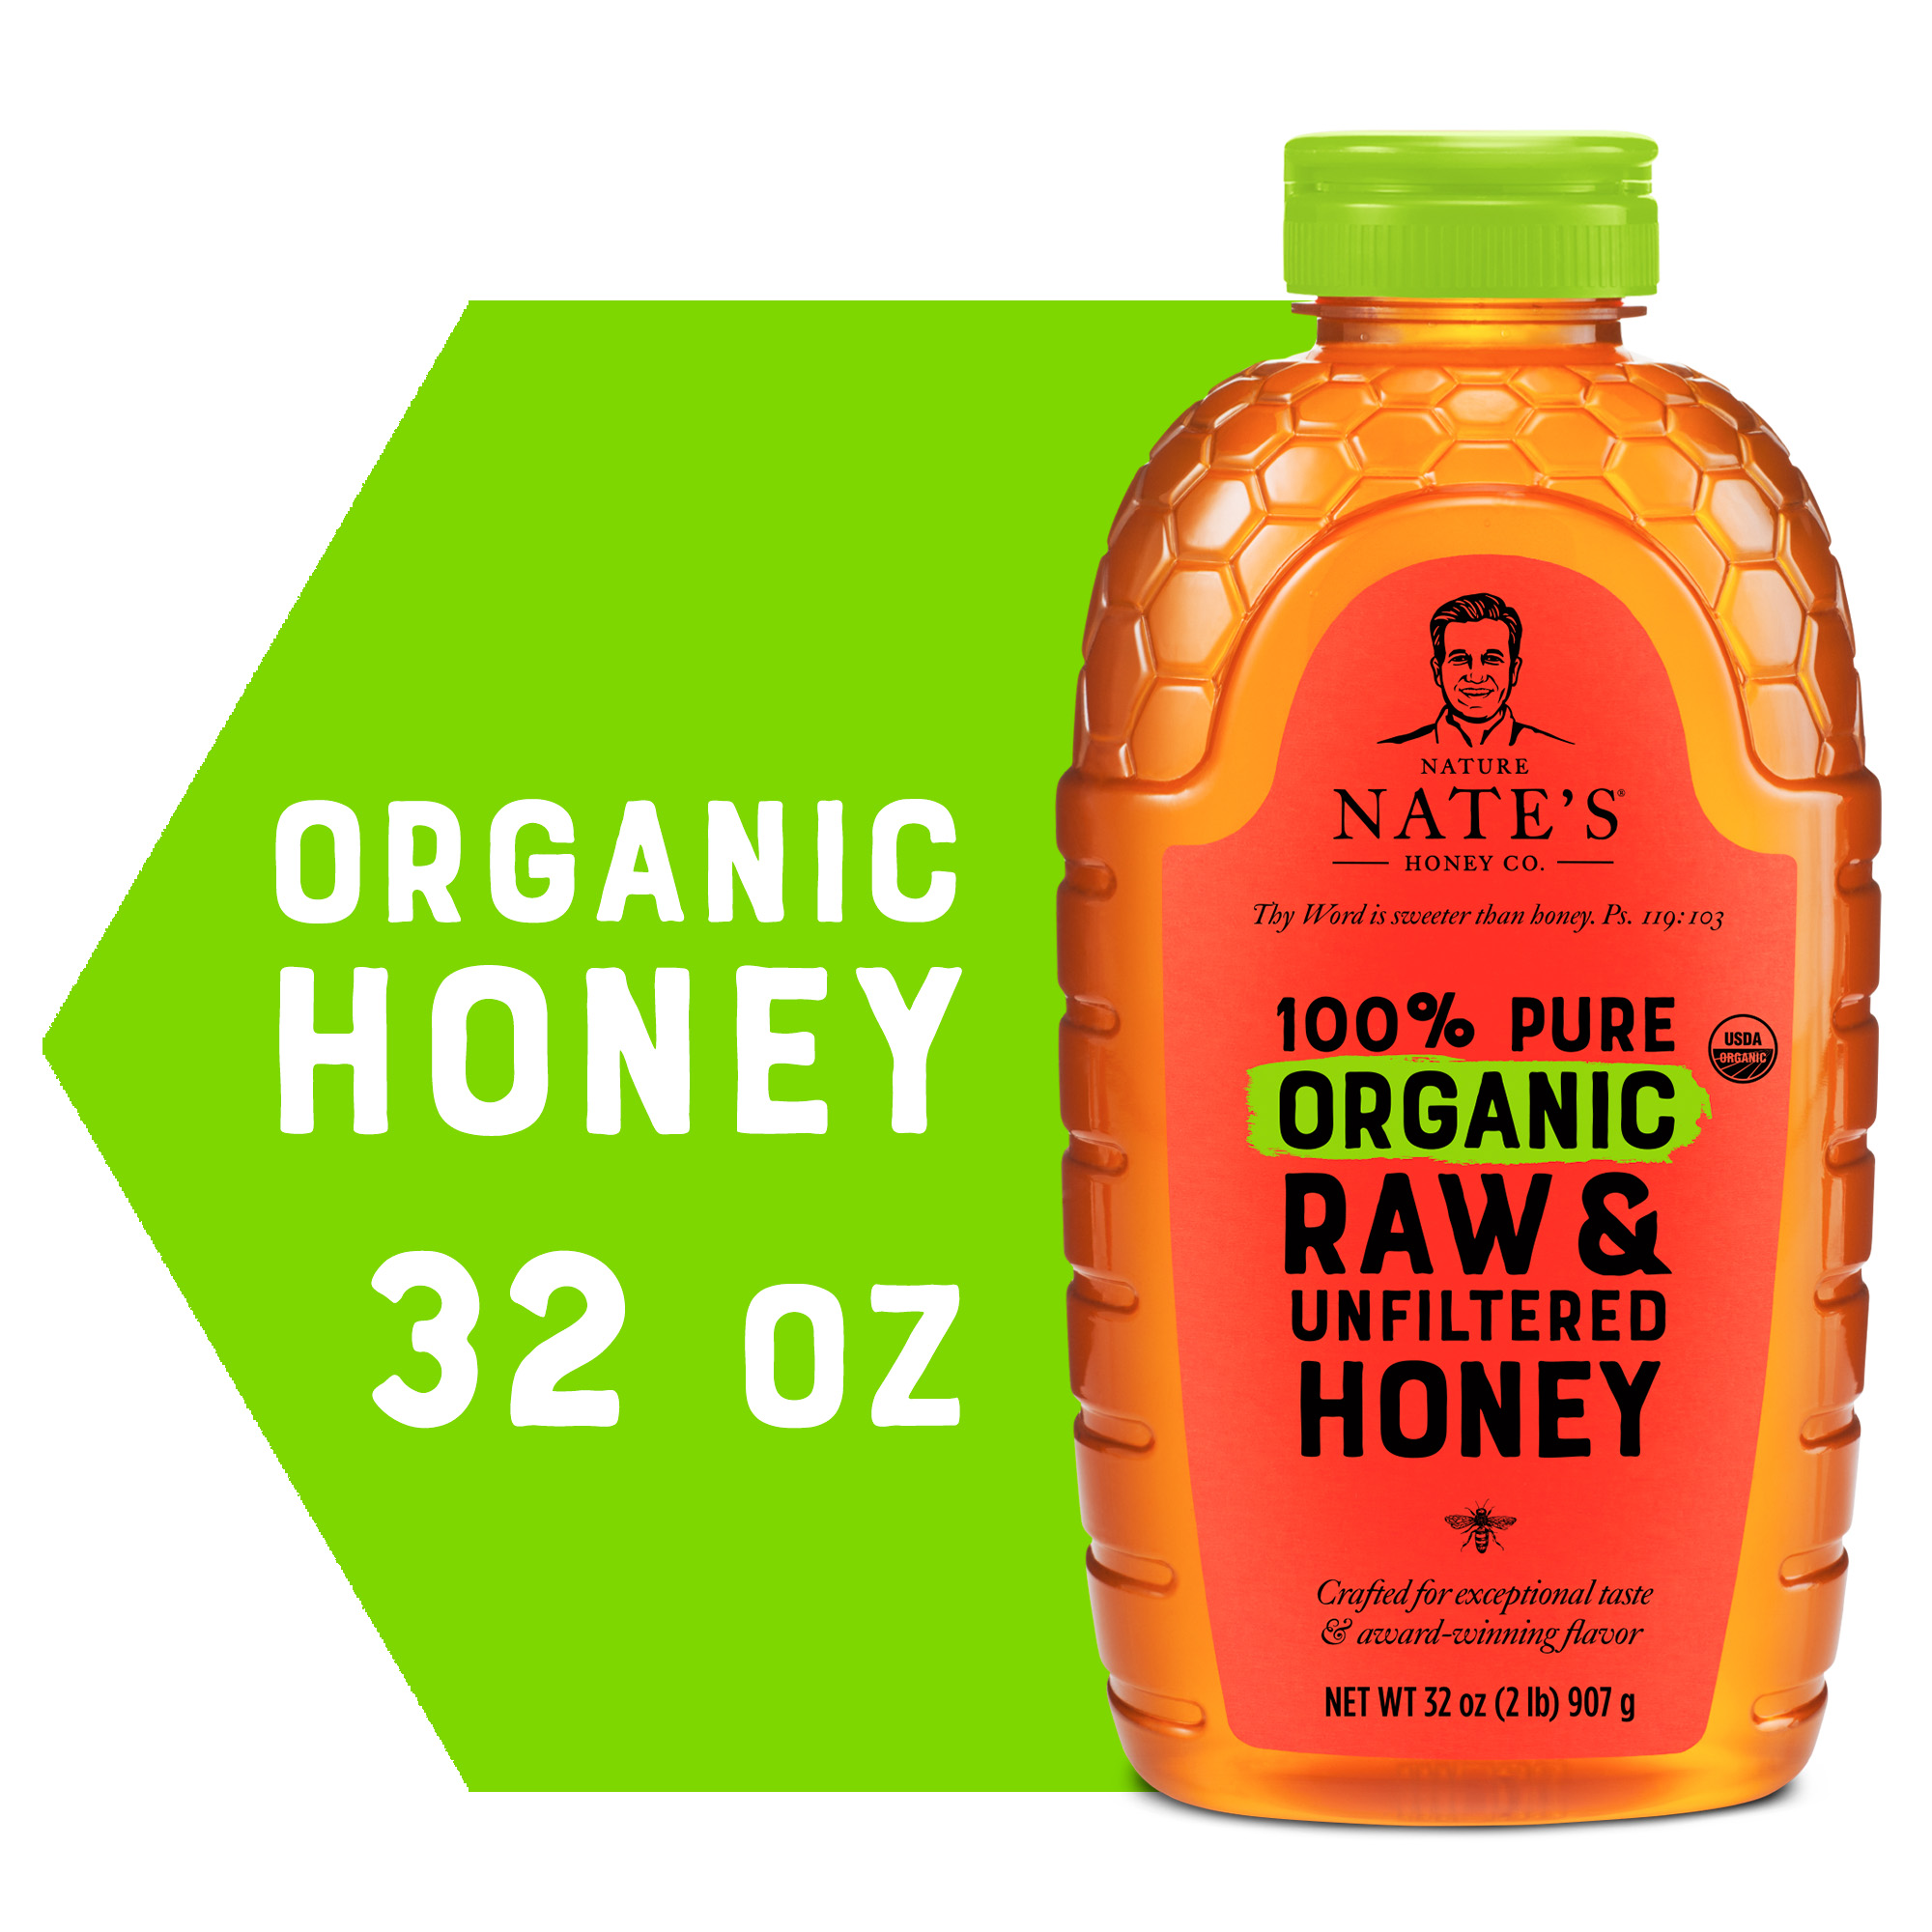 Nature Nate's Organic Honey: 100% Pure, Raw & Unfiltered Honey - 32 fl oz Gluten-Free Honey - image 1 of 14